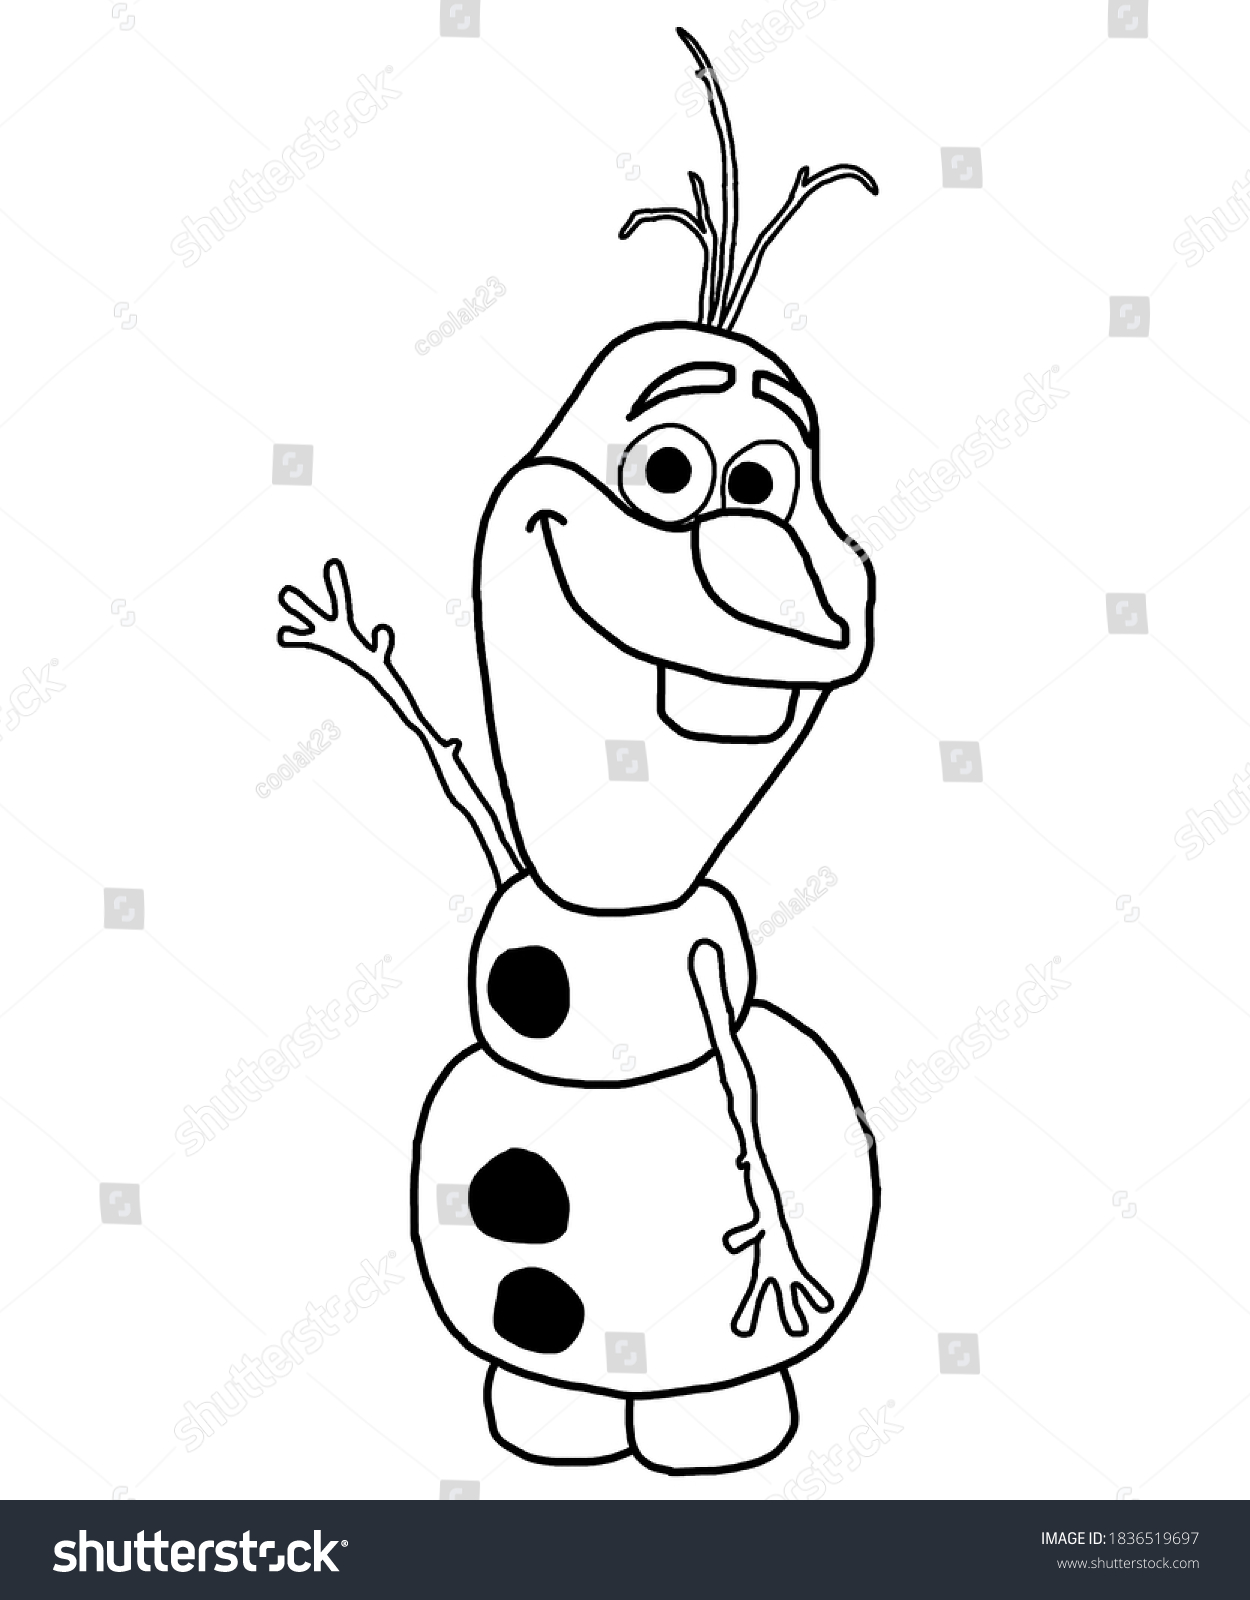 Hakuun coloring page olaf snowman liittyvã kuvituskuva